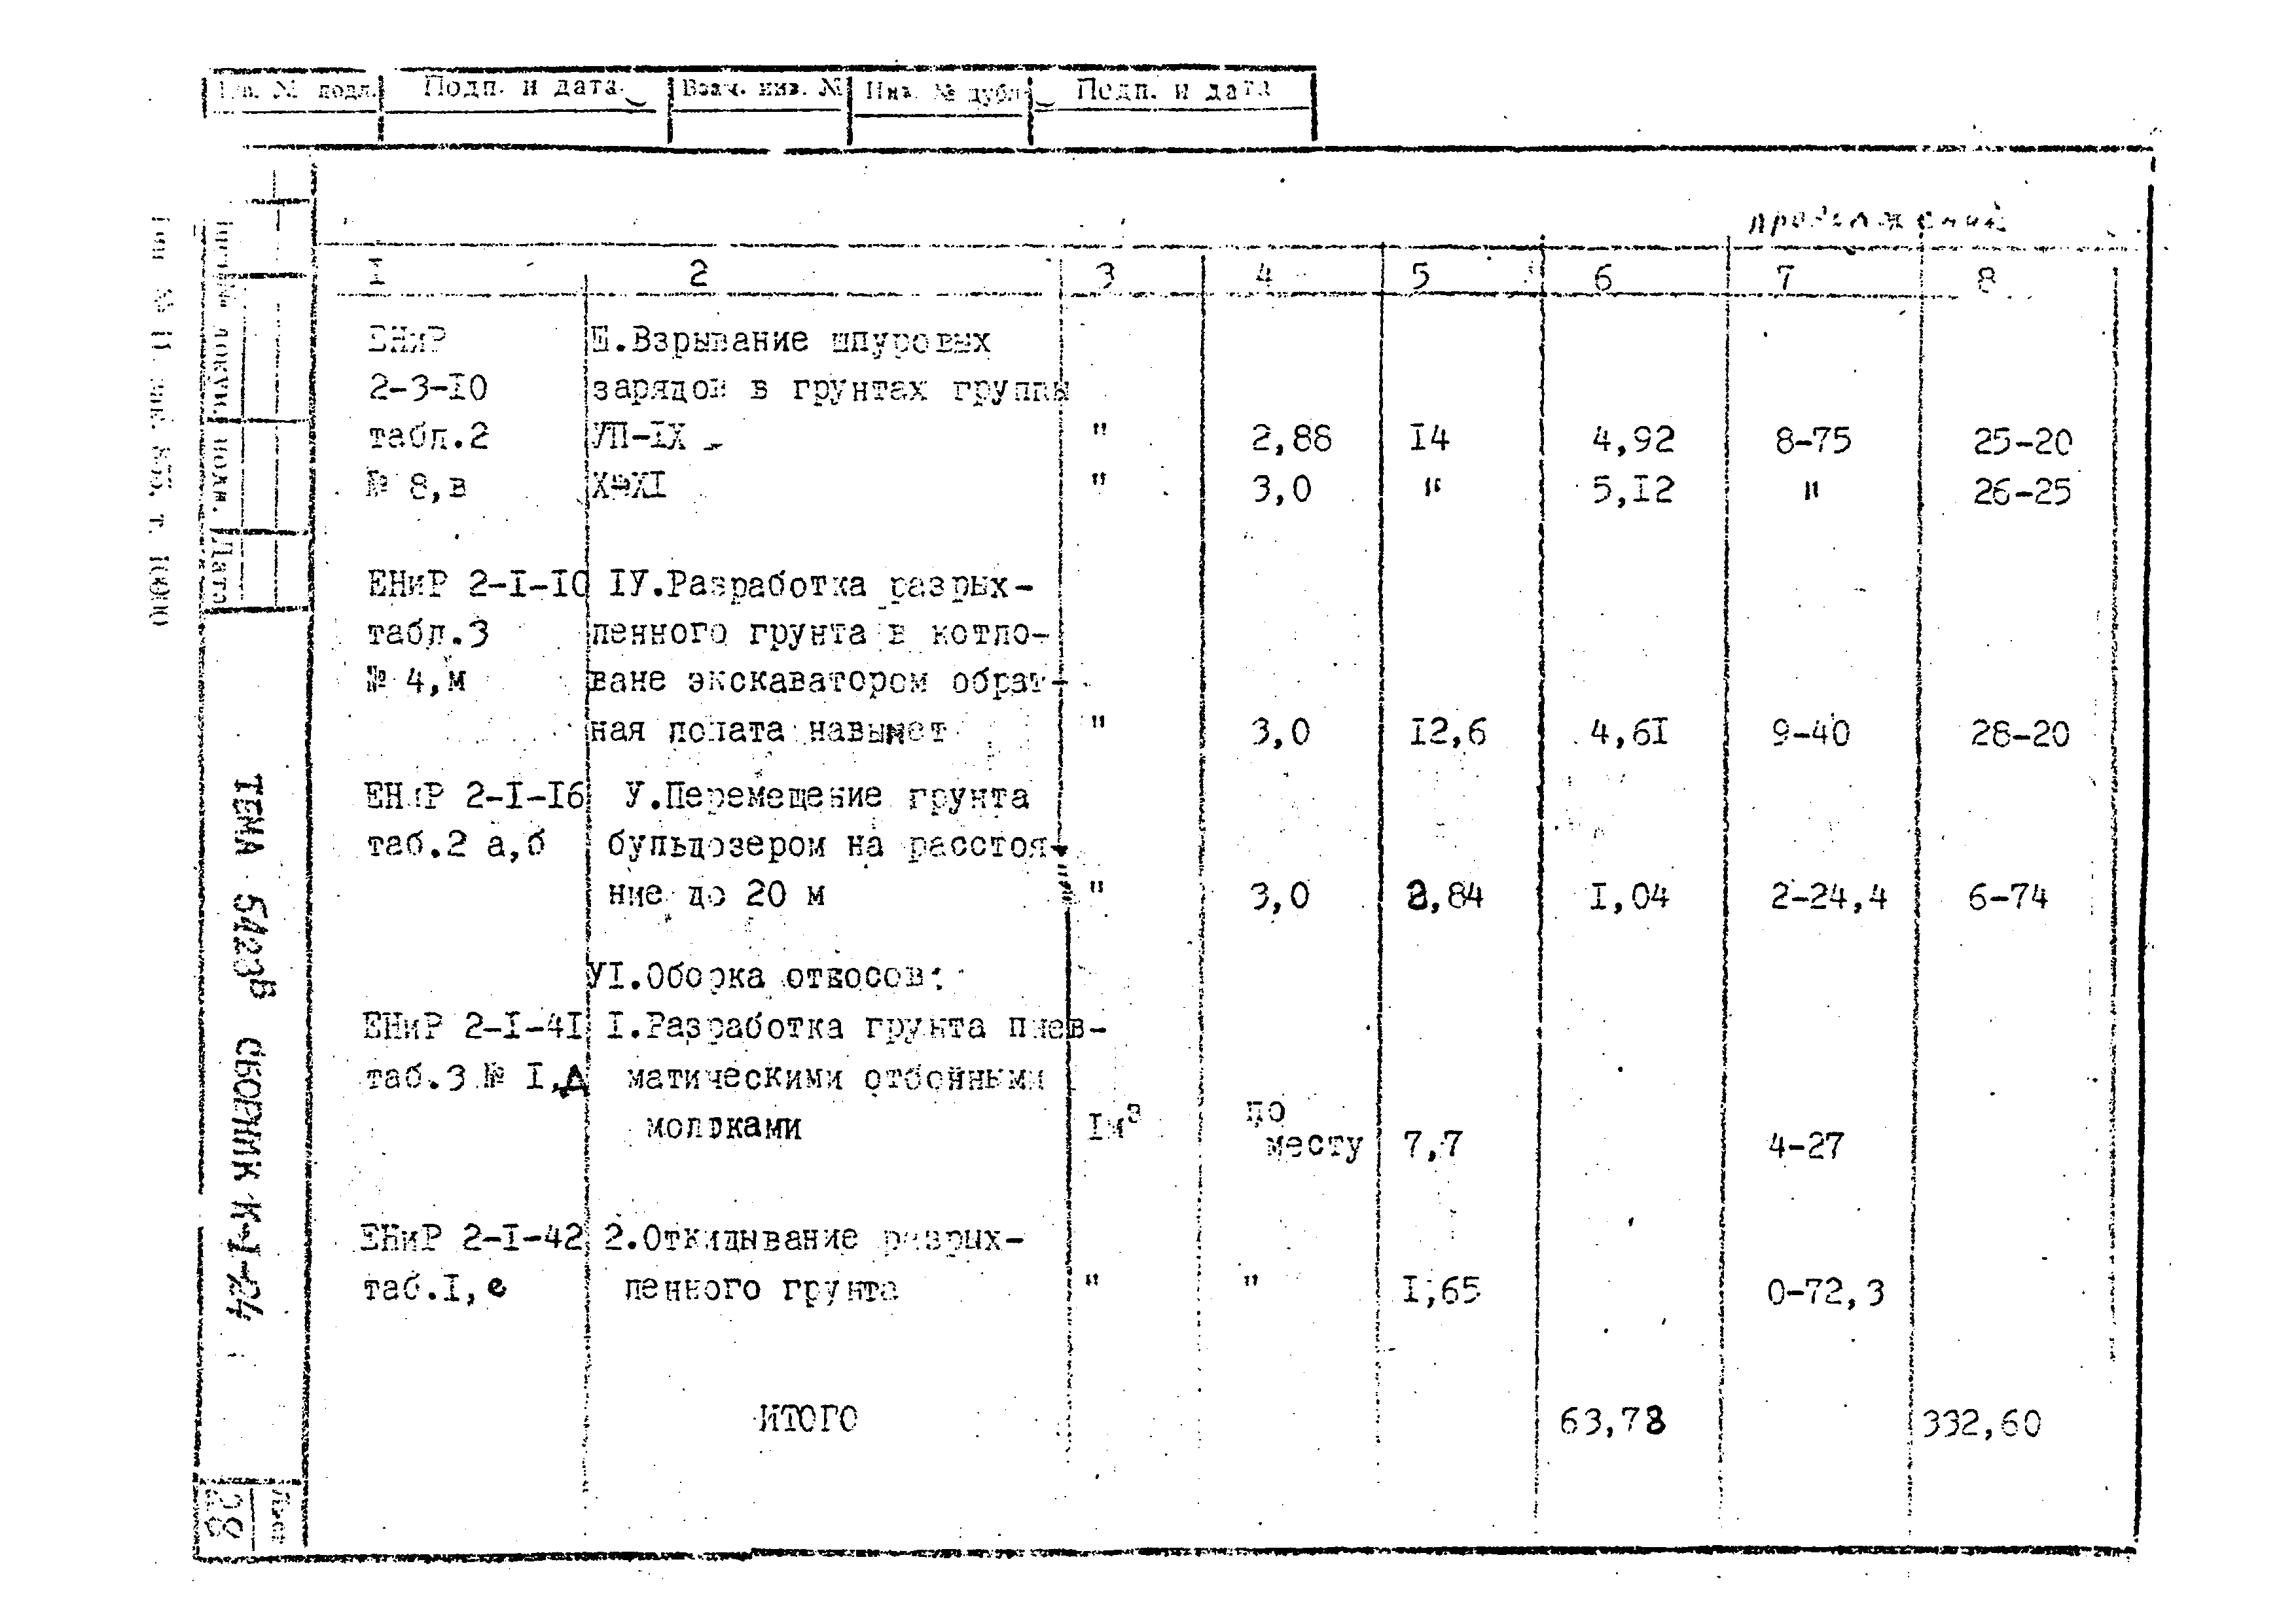 Технологическая карта К-1-24-2